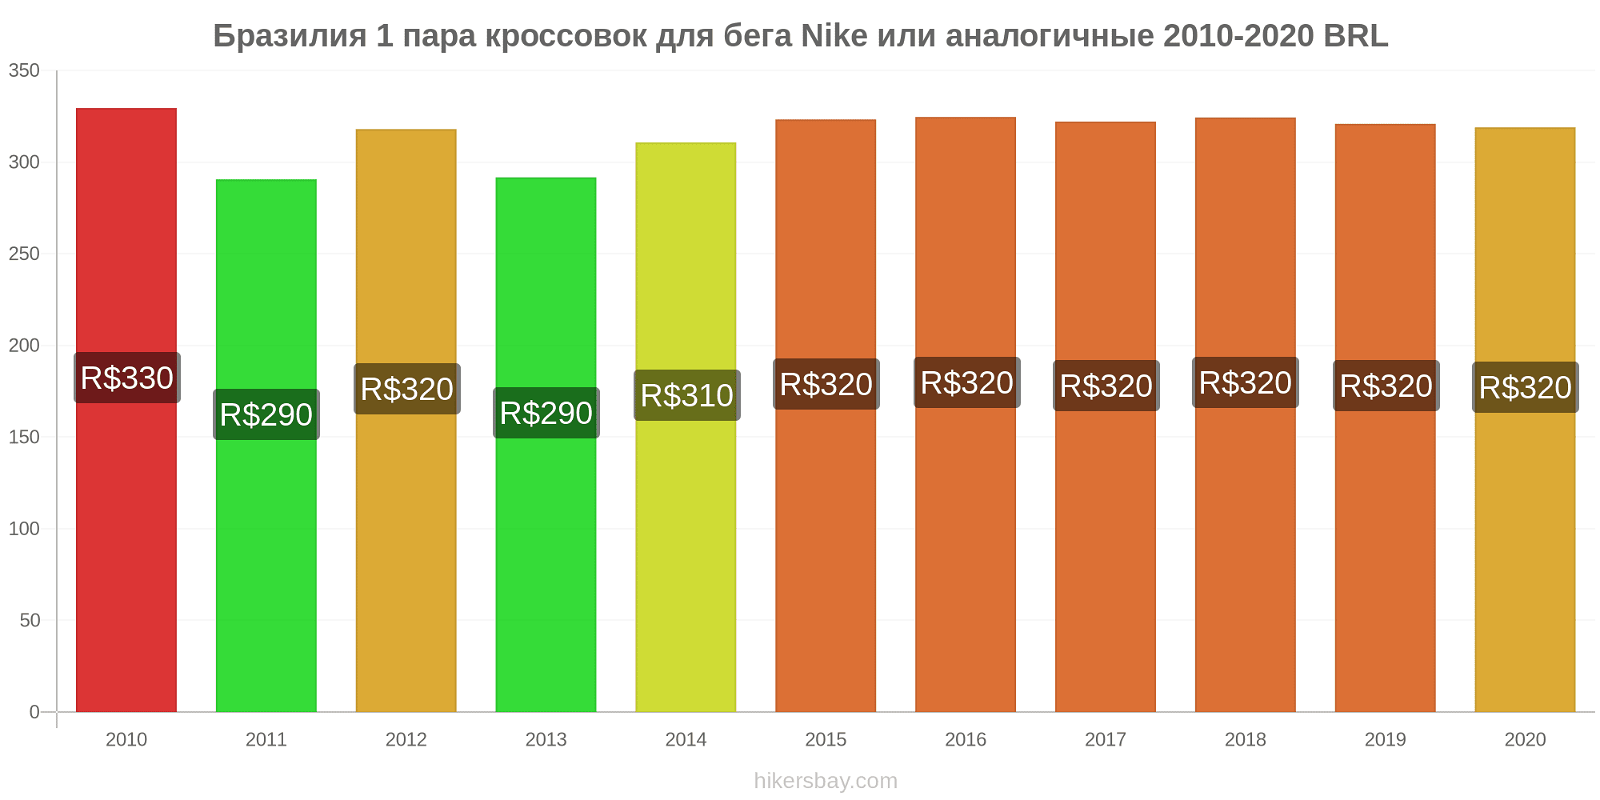 Бразилия изменения цен 1 пара кроссовок для бега Nike или аналогичные hikersbay.com